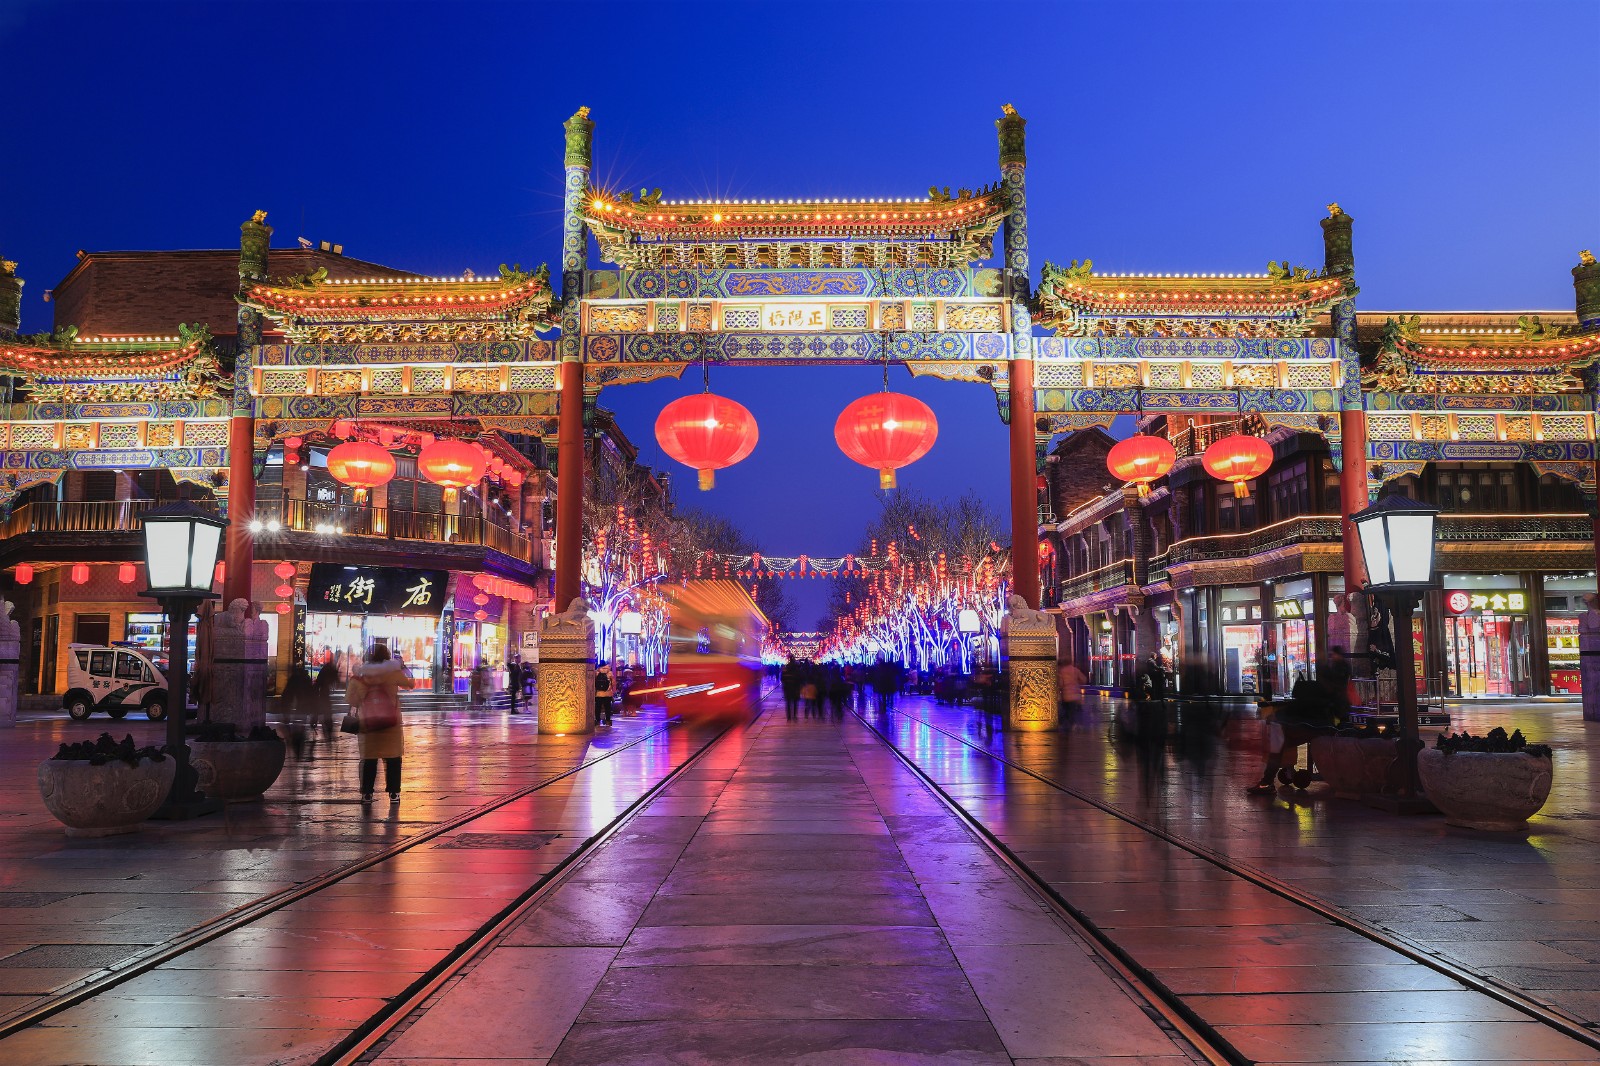 《节日之夜》  王越  13601098050      2020年1月30日拍摄于北京前门大街_副本.jpg